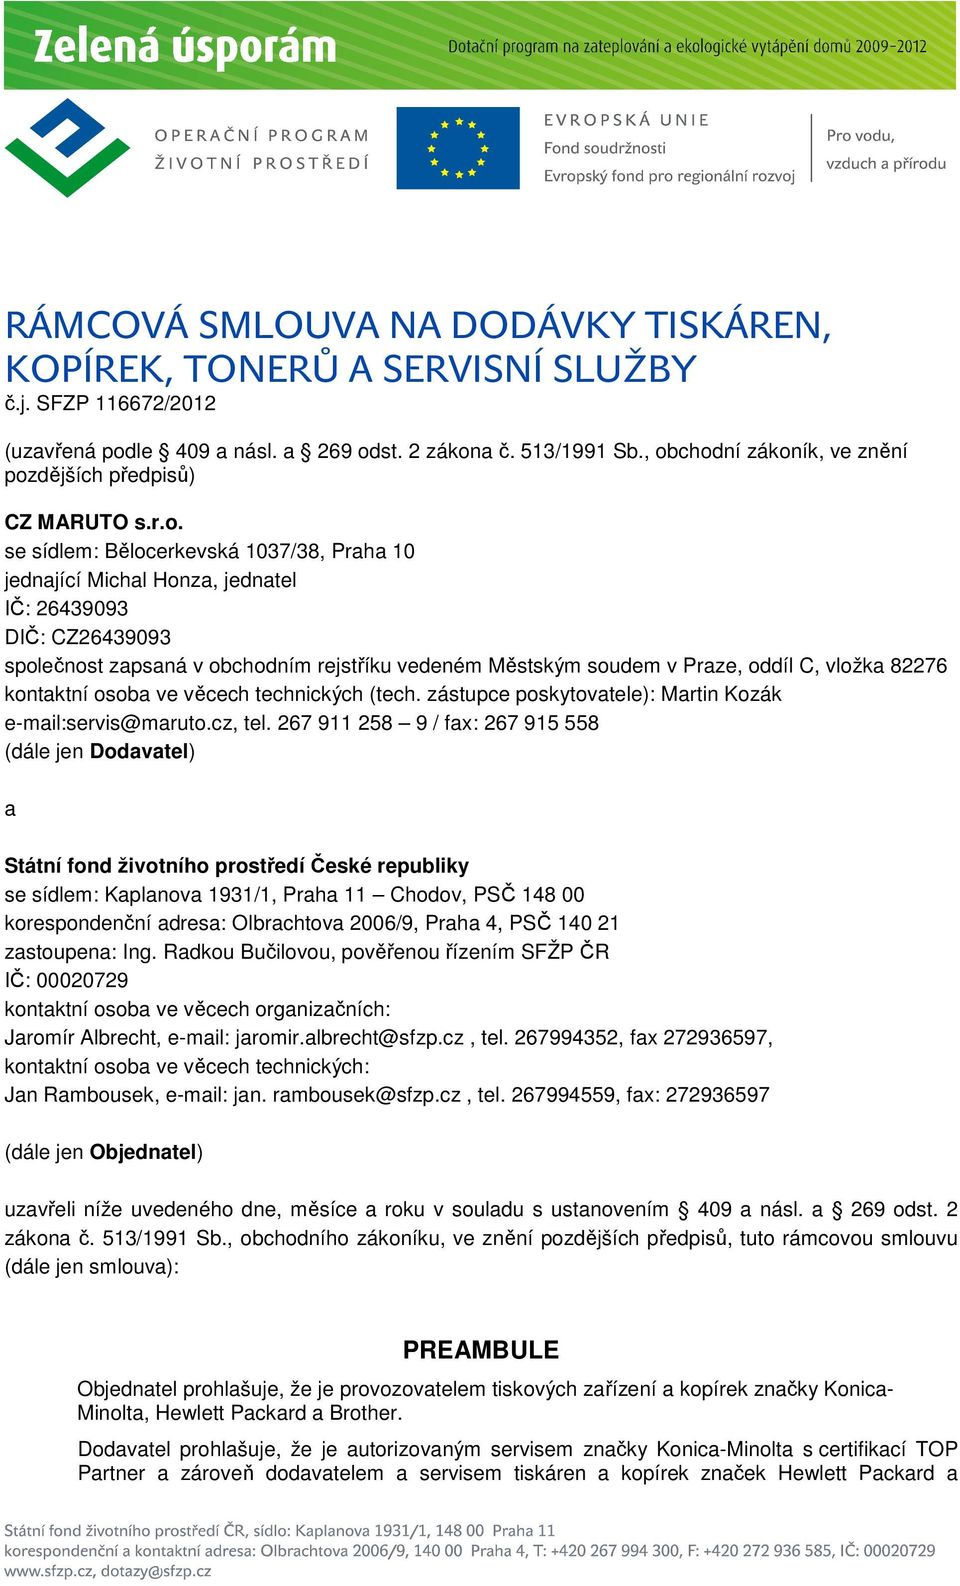 obchodním rejstříku vedeném Městským soudem v Praze, oddíl C, vložka 82276 kontaktní osoba ve věcech technických (tech. zástupce poskytovatele): Martin Kozák e-mail:servis@maruto.cz, tel.